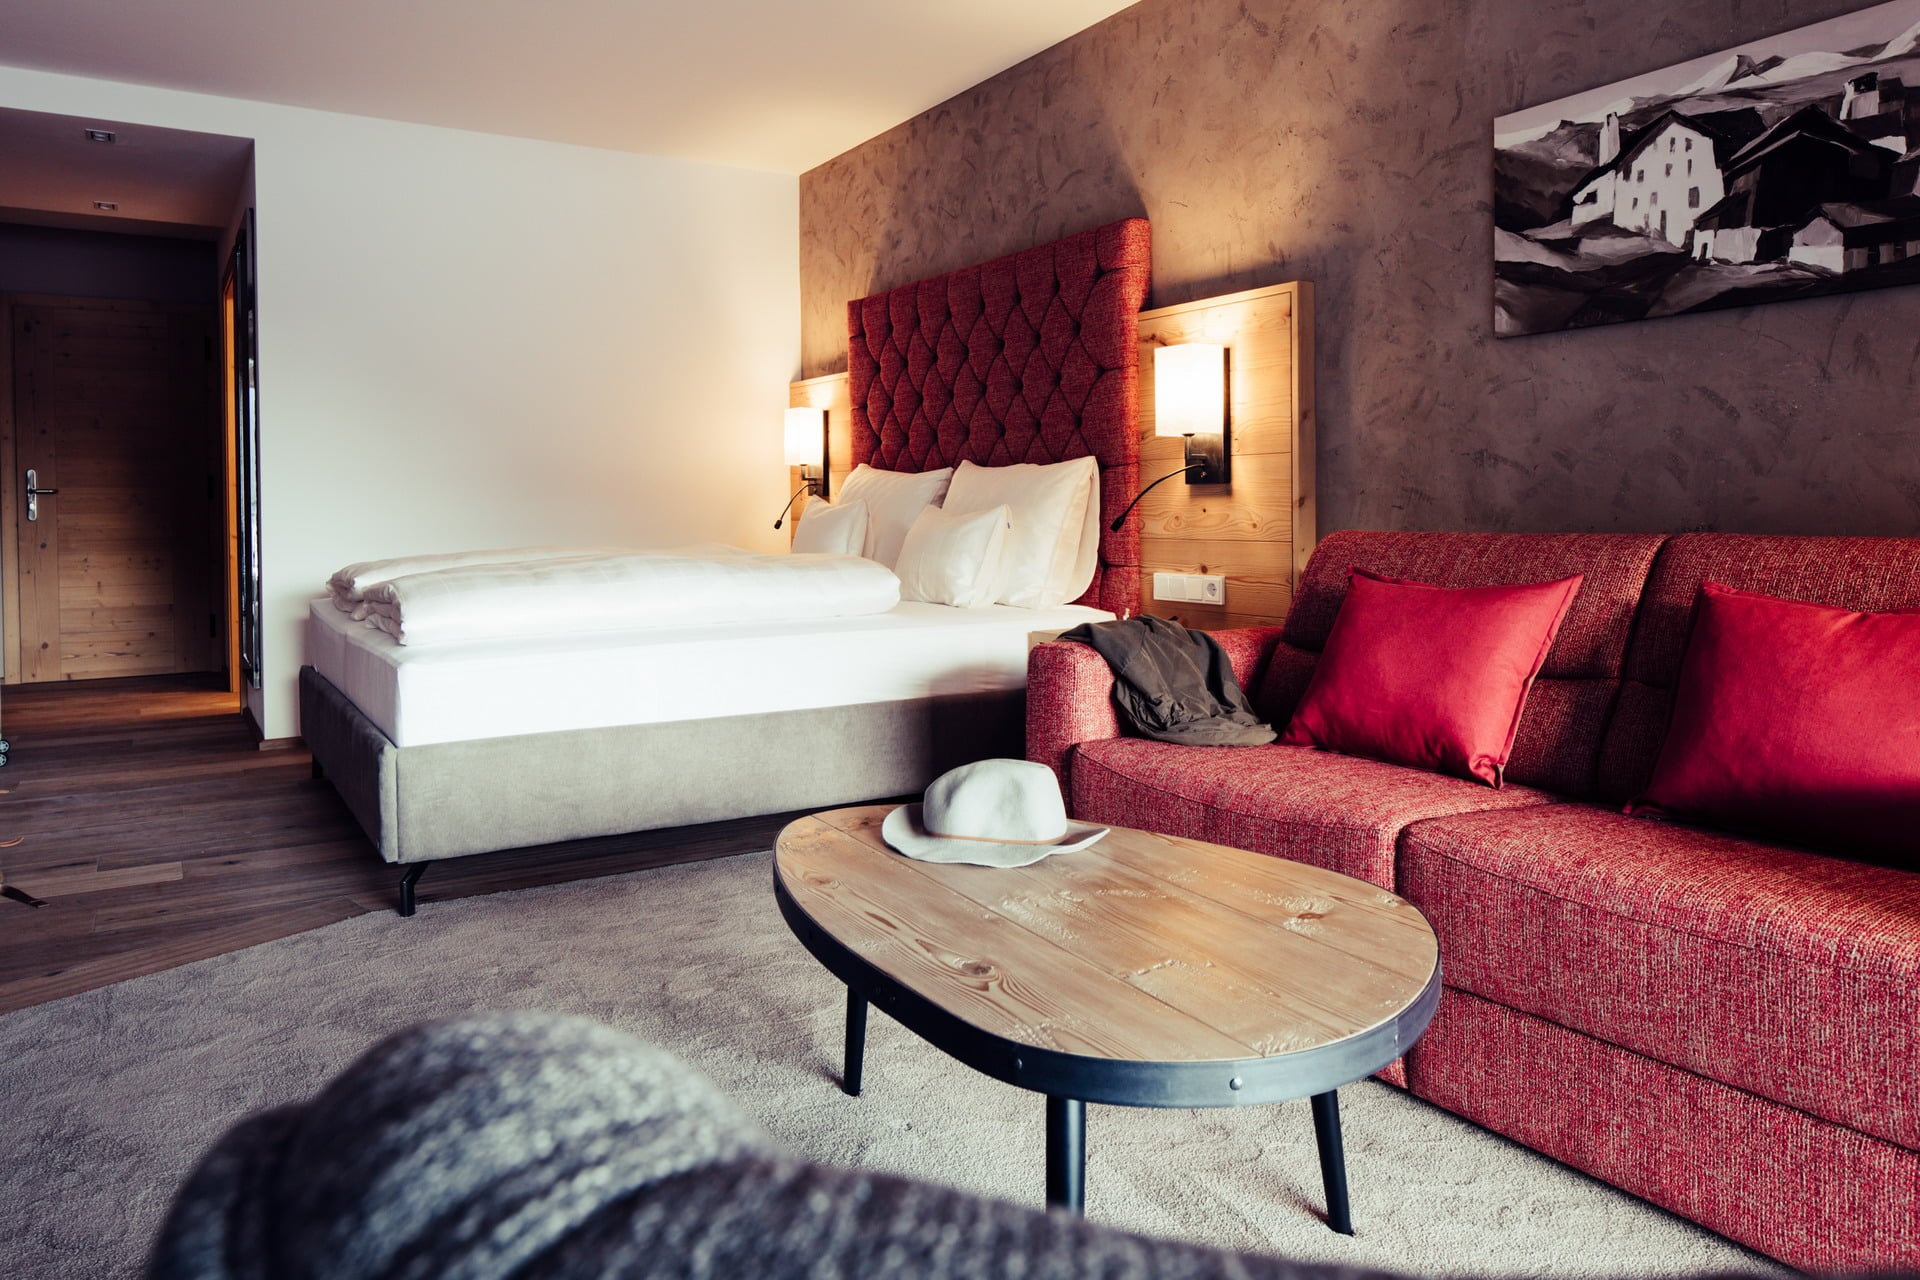 Gemütliches Hotelzimmer im Biohotel Bergzeit mit Couch und Boxspringbett von sedda Polstermöbelwerke.